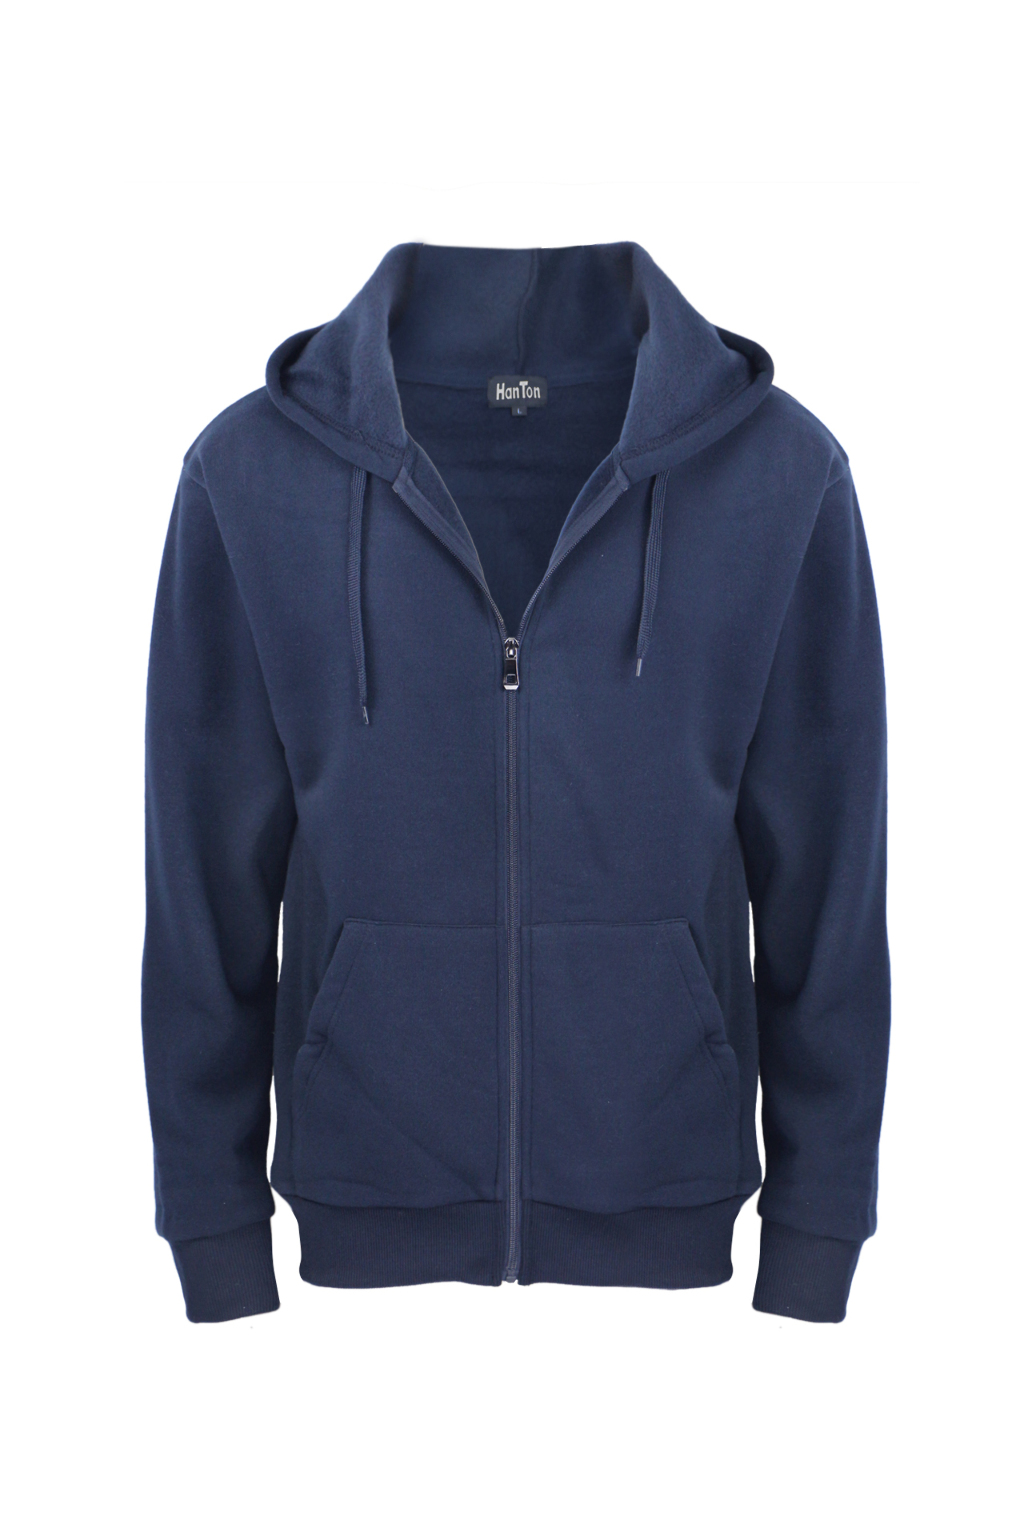 Wholesale Men's Zipper Fleece Hoodie - Navy, S - XL (SKU 2342312 ...